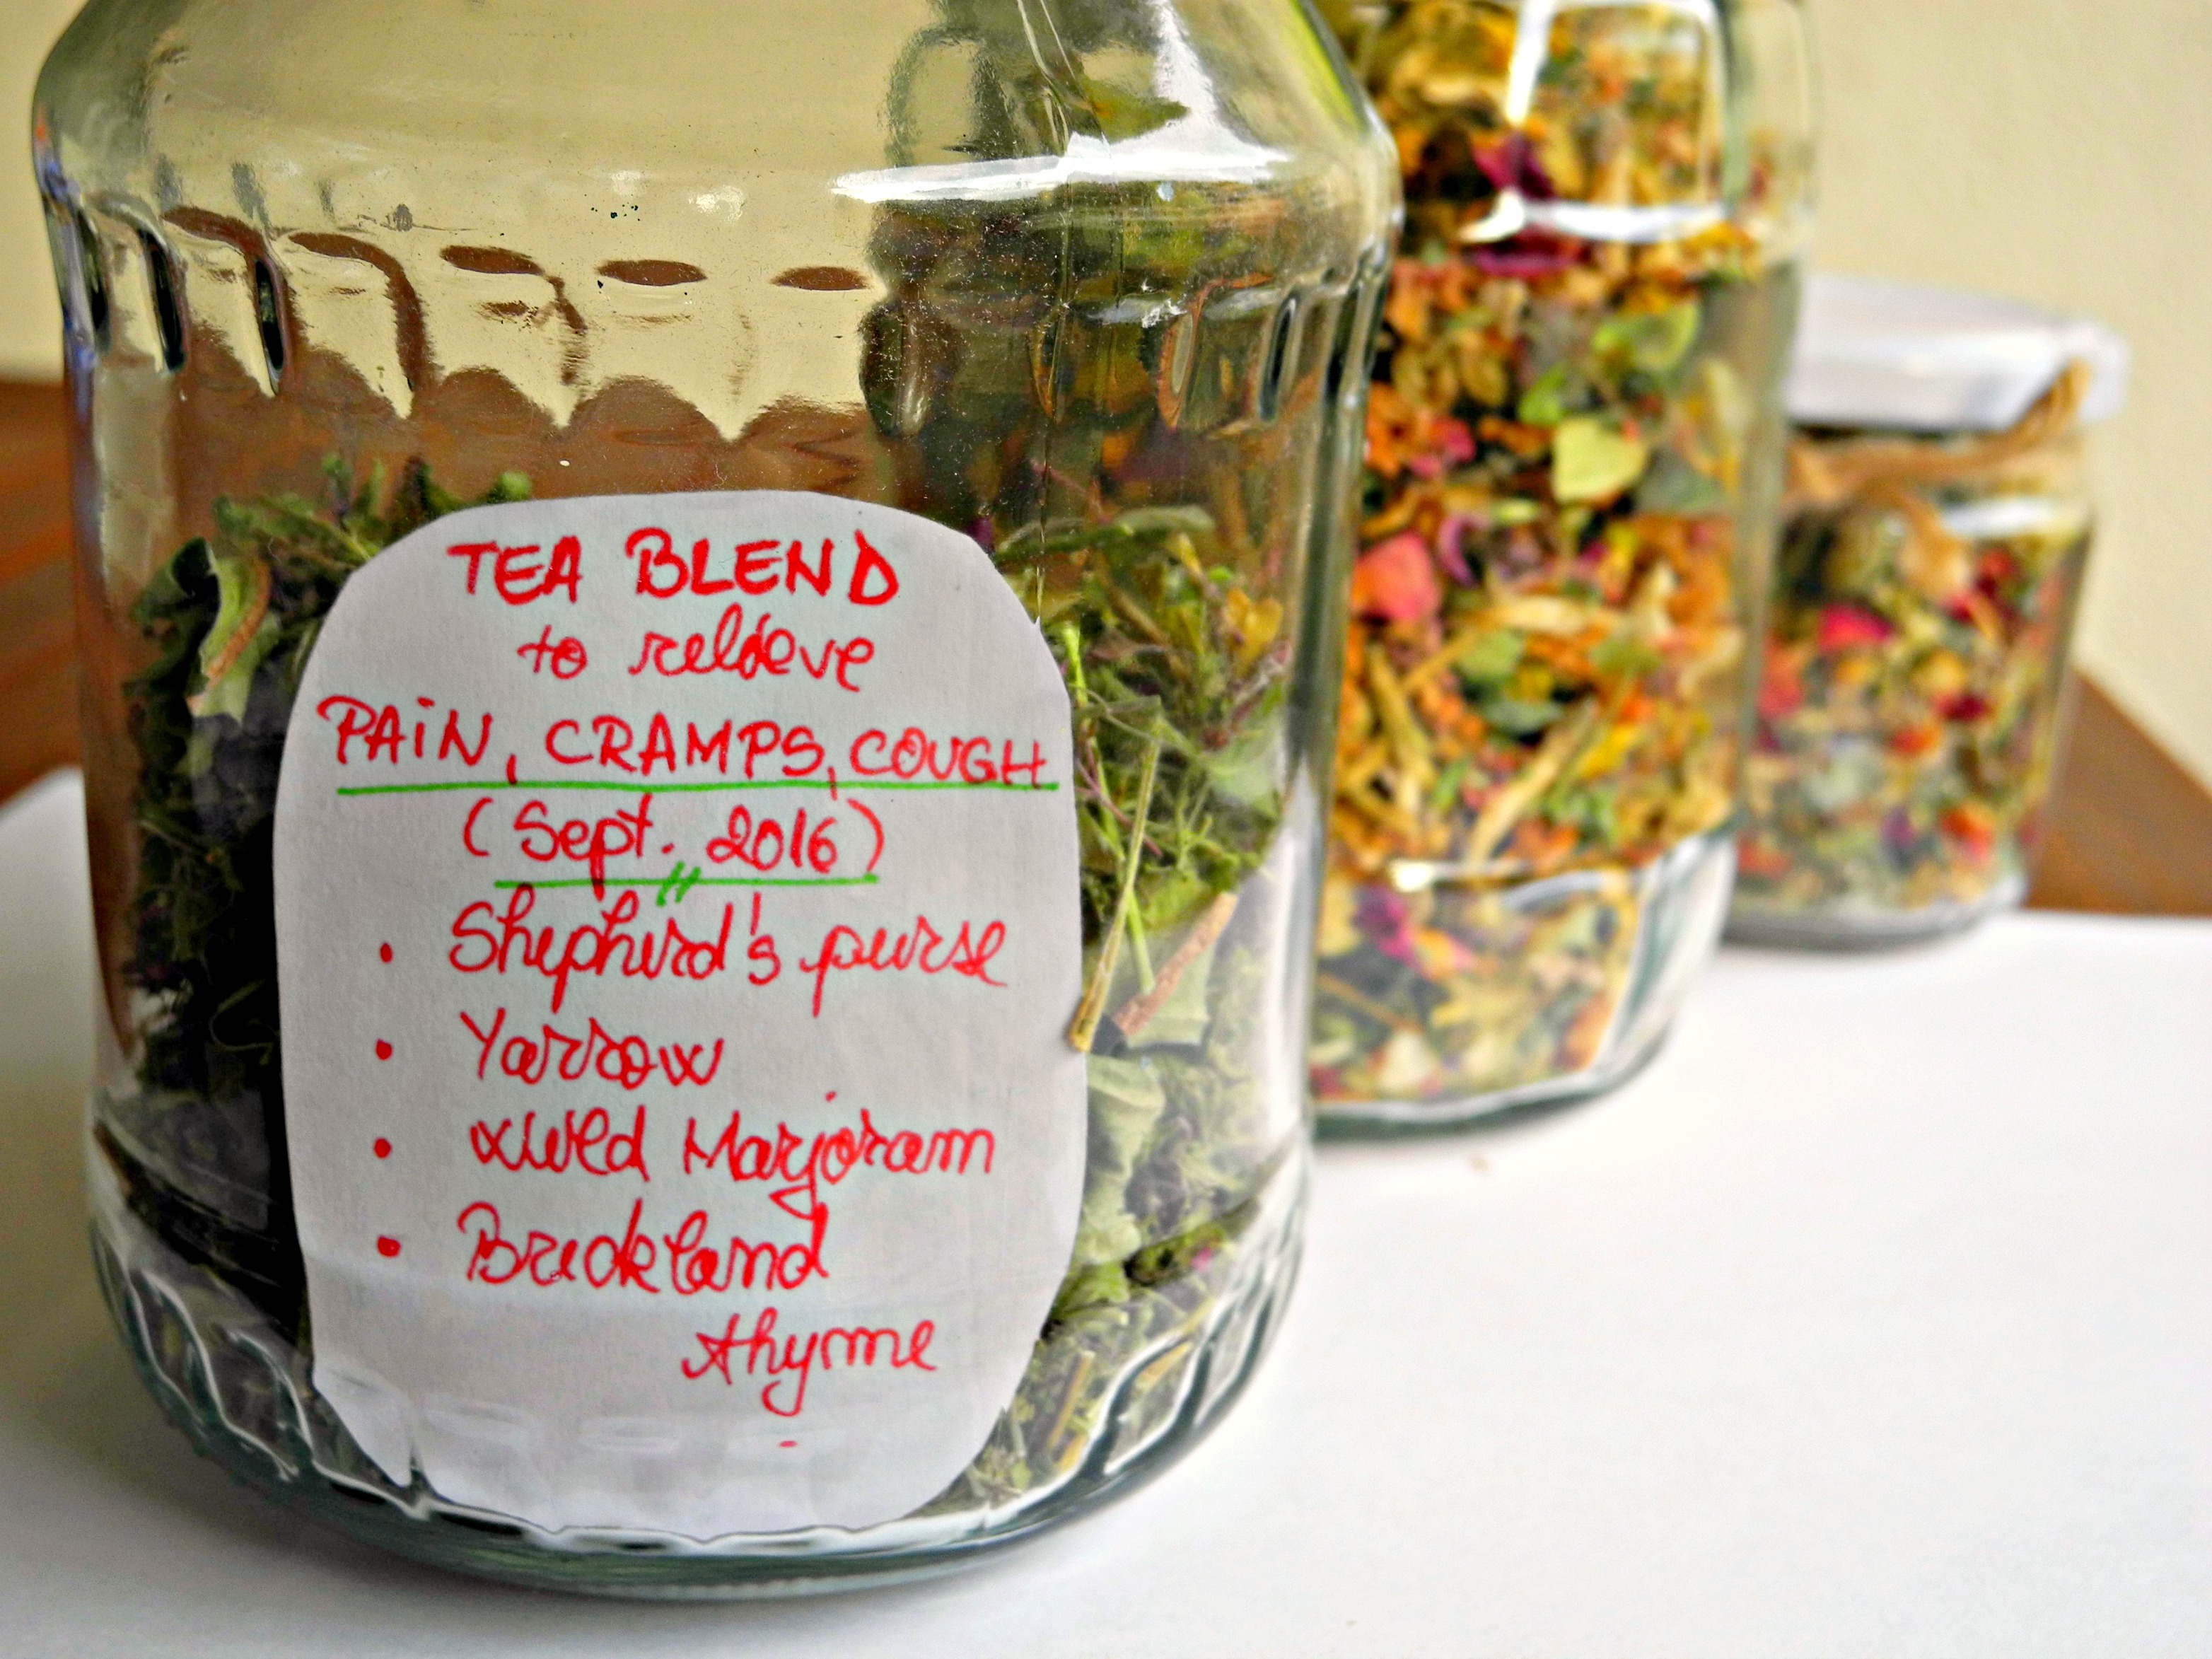 Shepherd's Purse - 50g Herbal Tea - Hilde Hemmes' Herbals